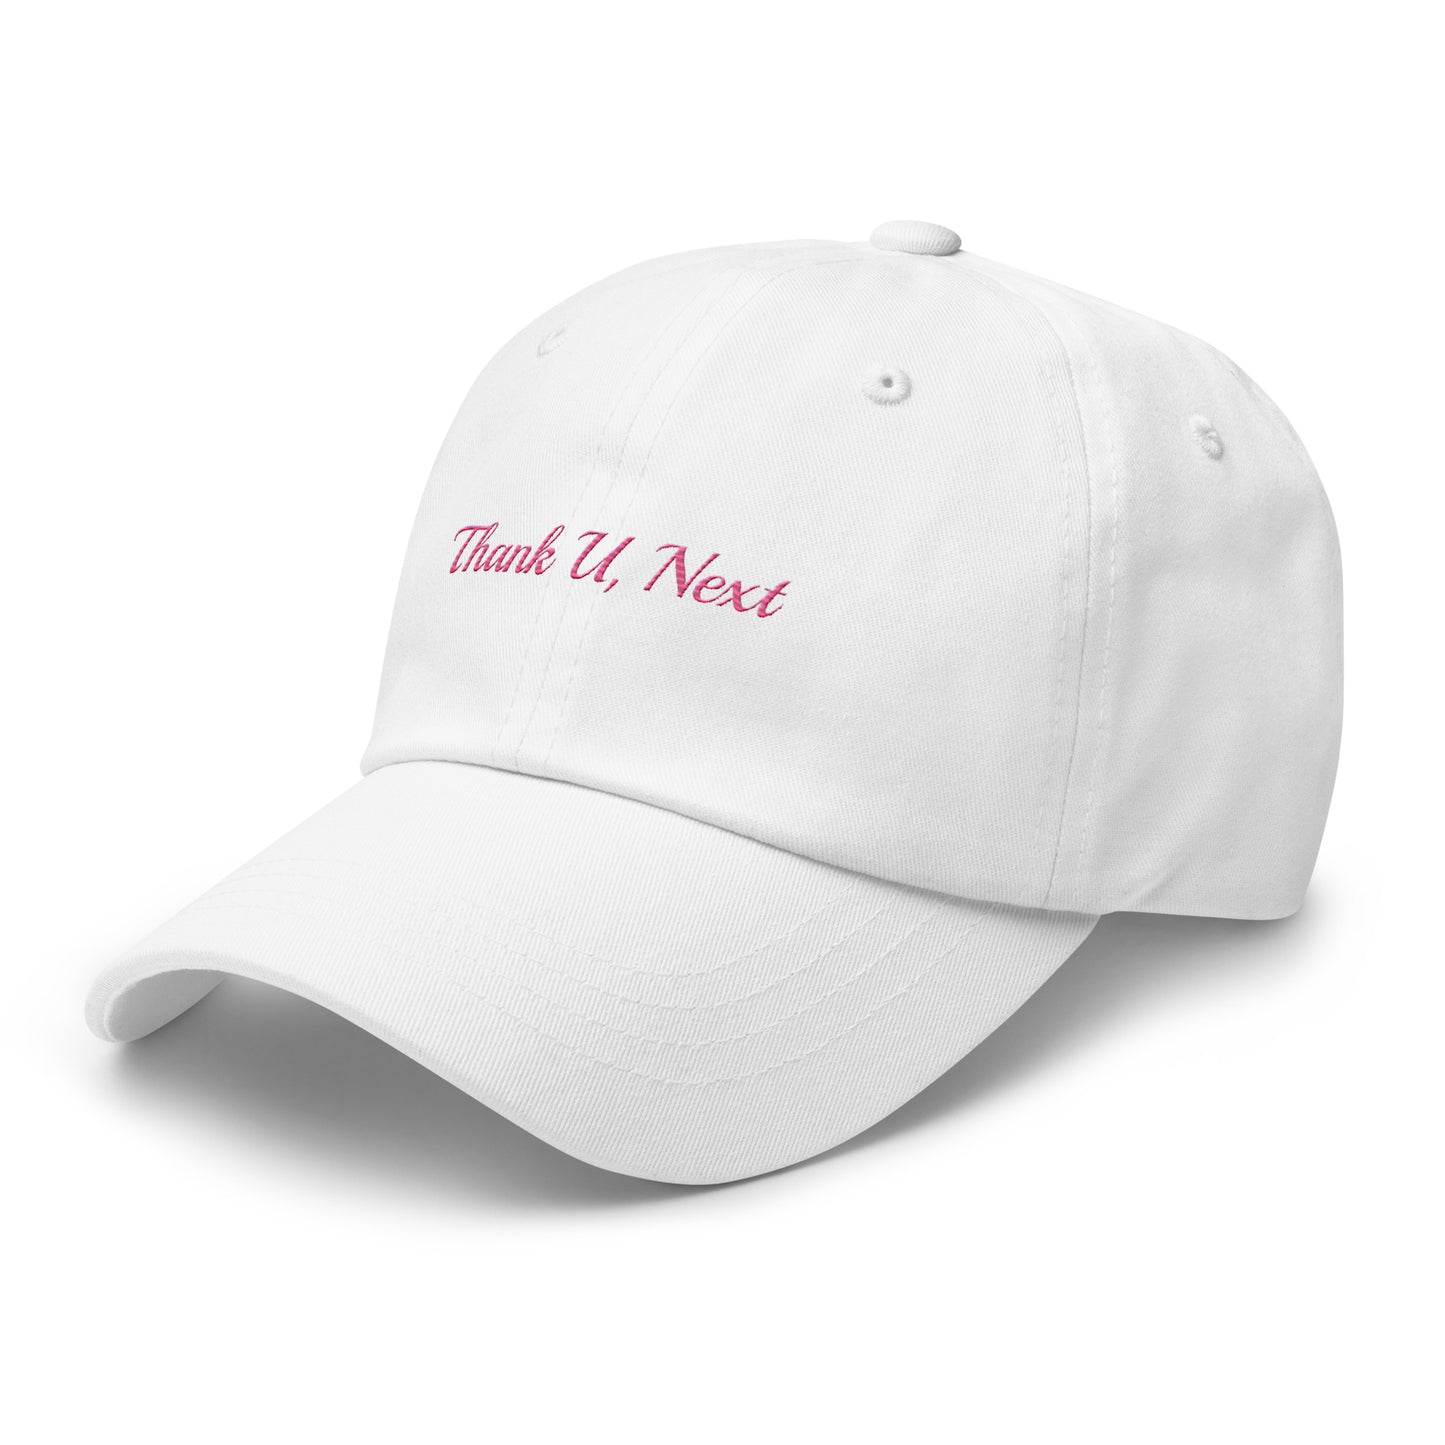 Thank U, Next Hat